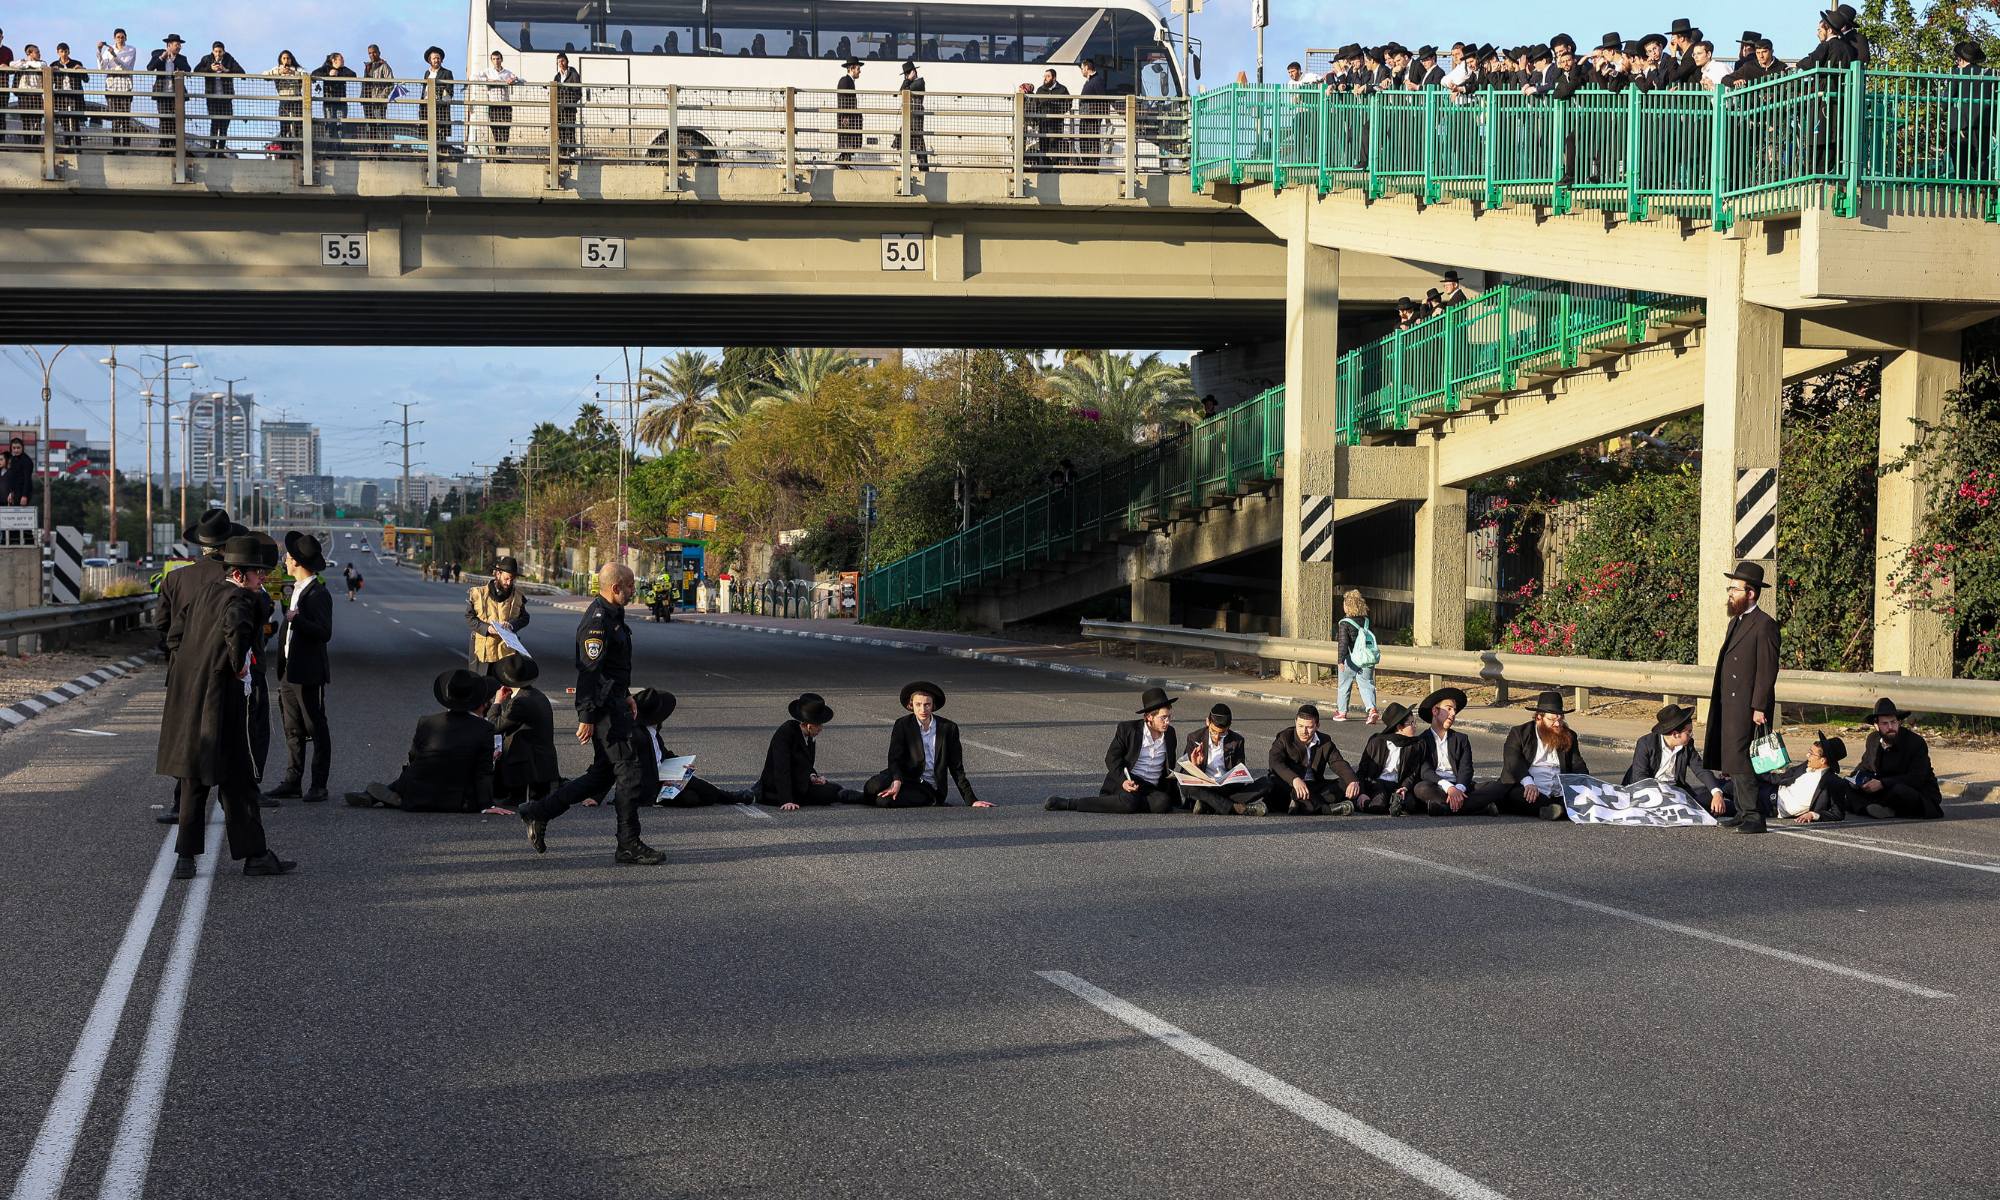 מפגינים מתחת לגשר גבעת שמואל, אתמול אחר הצהריים | צילום: איתי רון